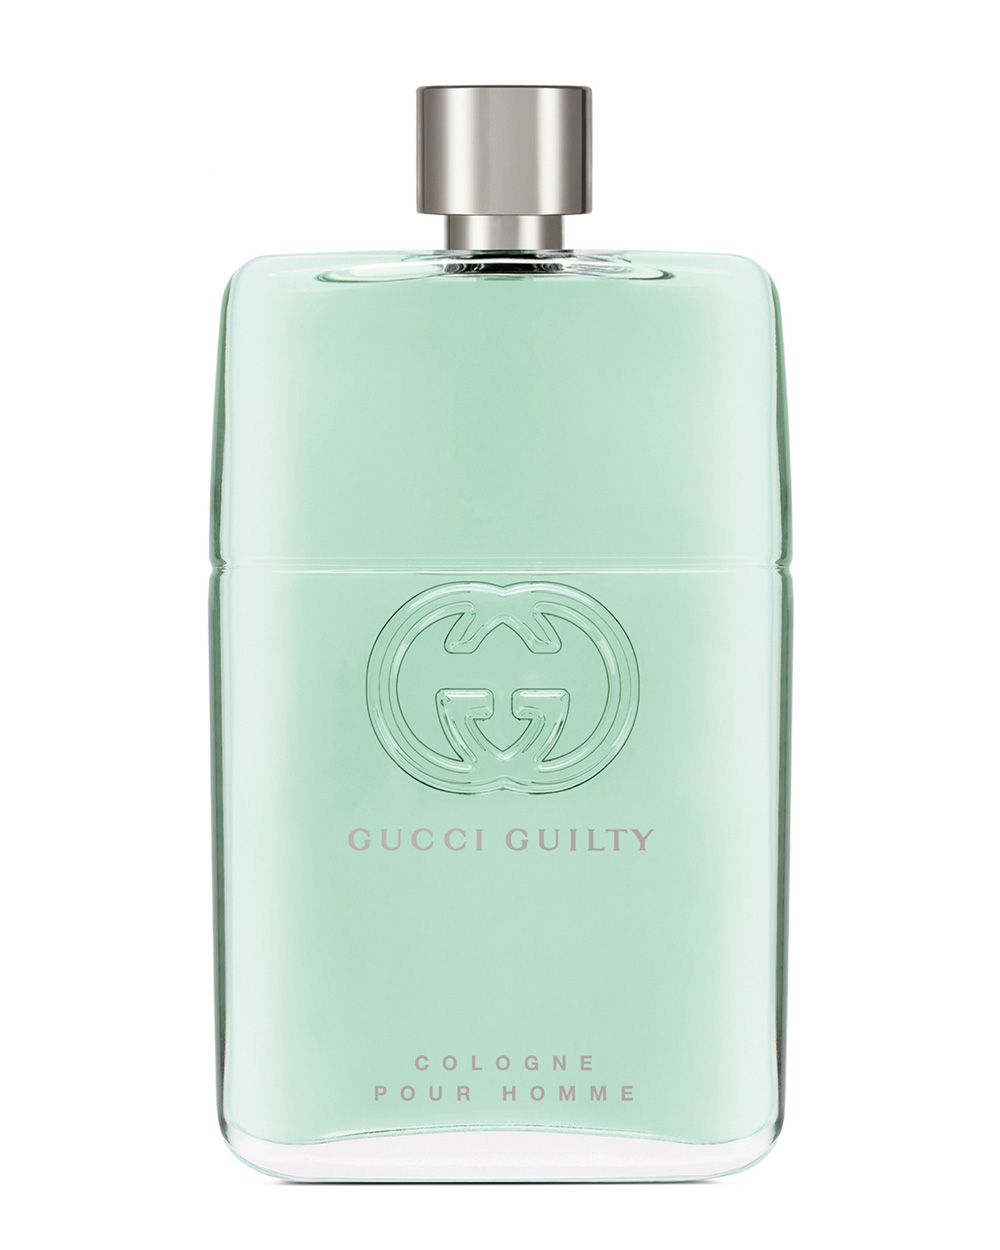 Guccy Guilty Cologne Pour Homme muški parfemi proljeće 2020